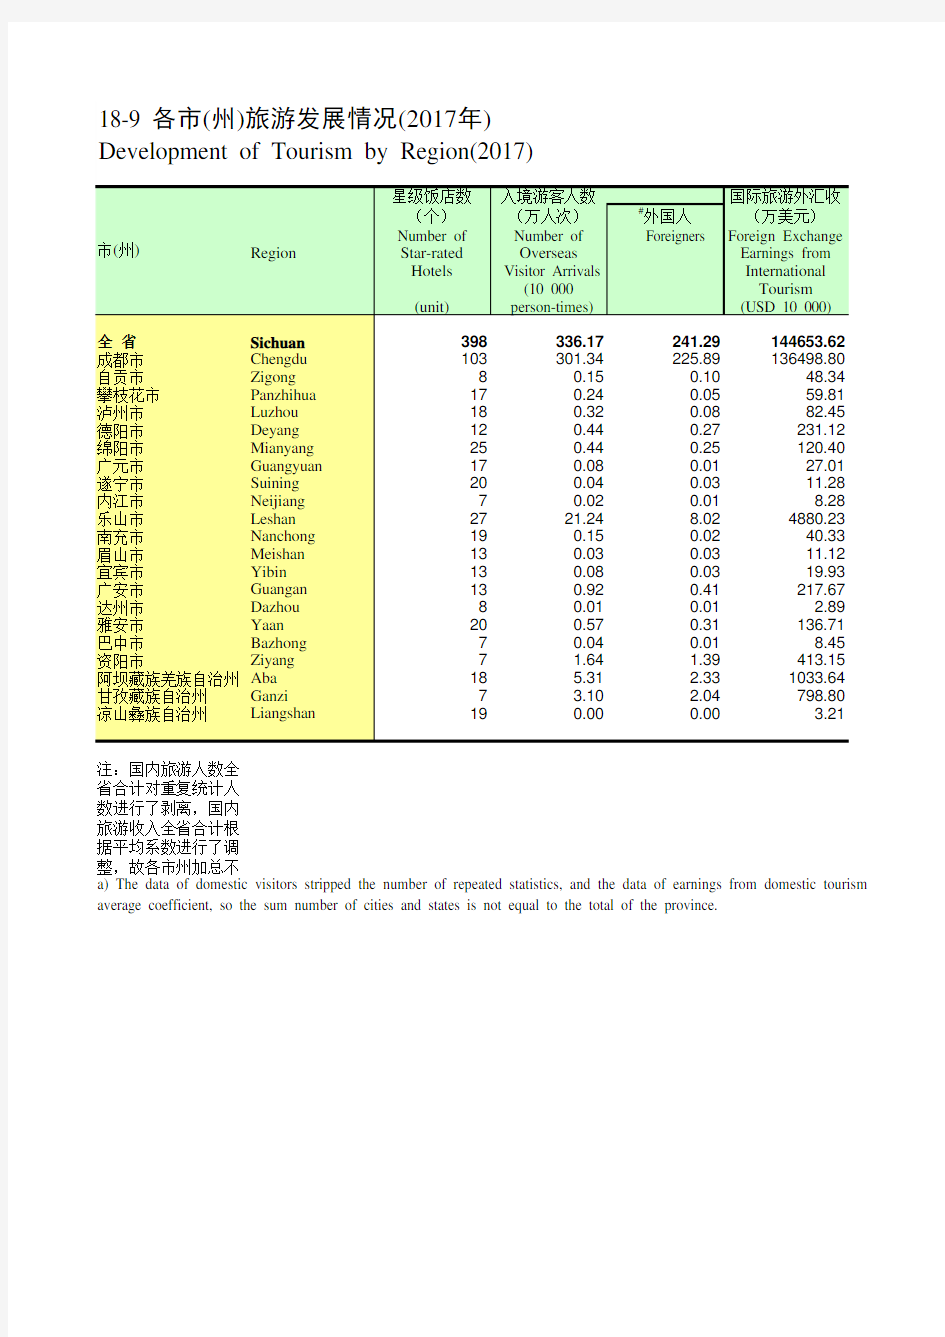 四川统计年鉴2018社会经济发展指标：各市(州)旅游发展情况(2017年)